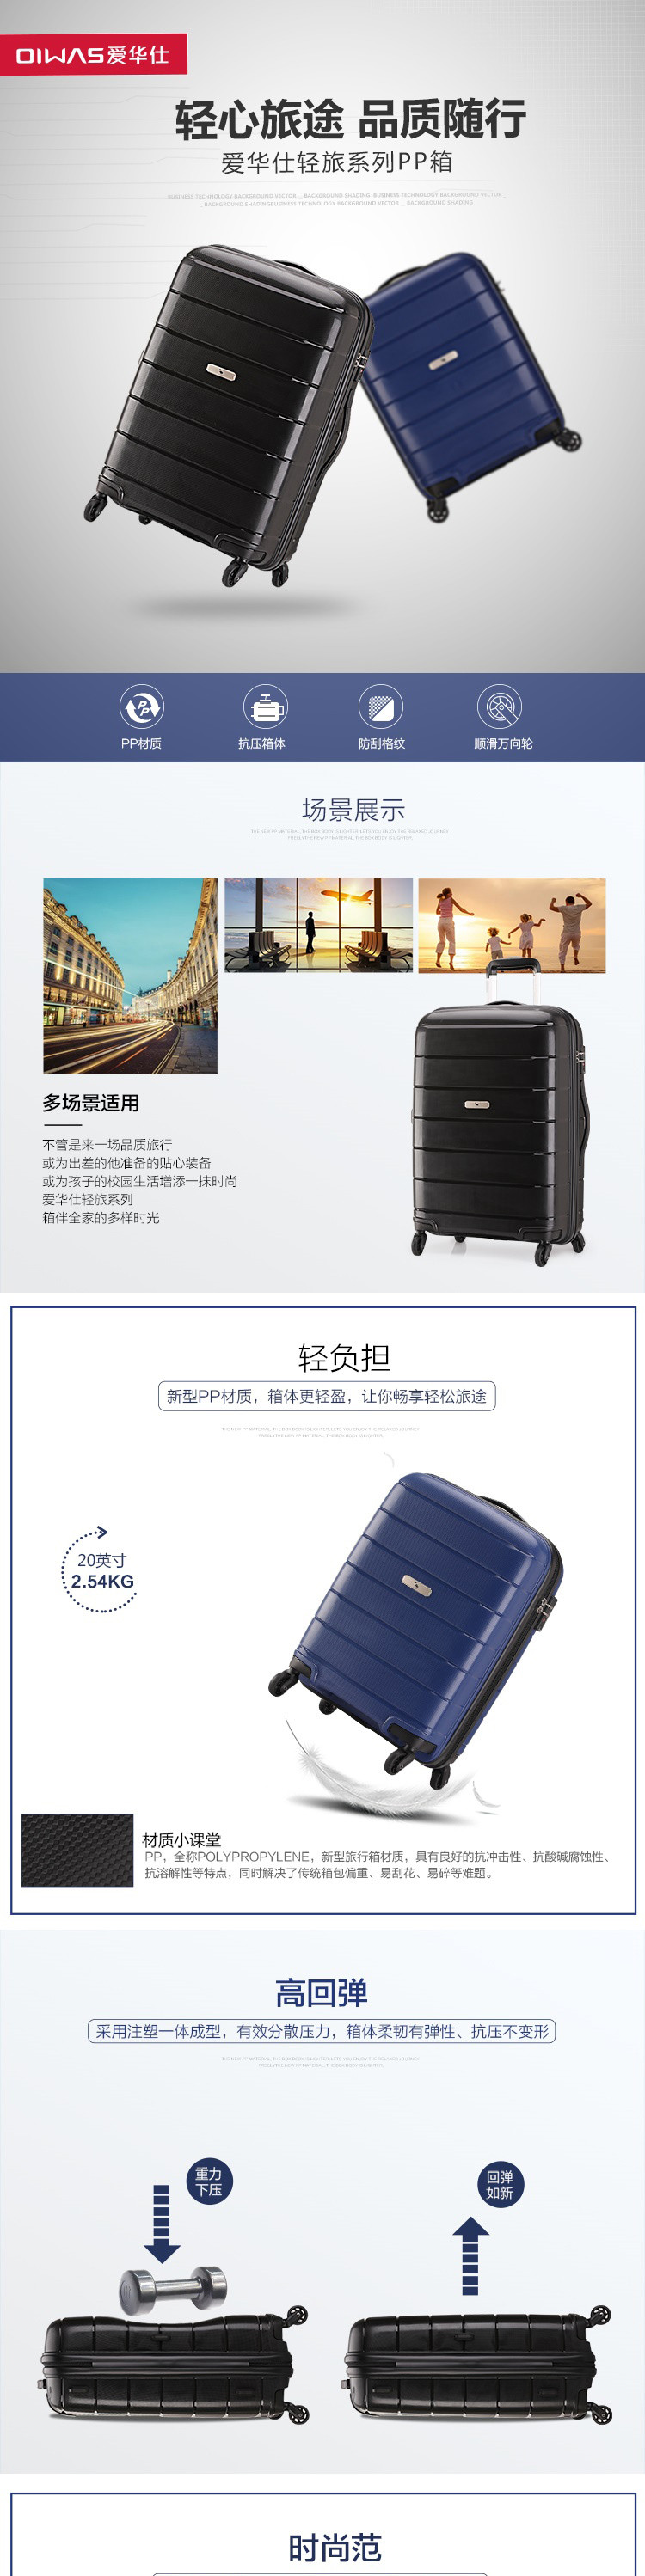 爱华仕/OIWAS 静音万向轮耐磨抗刮行李箱拉杆箱 OCX6501 20寸